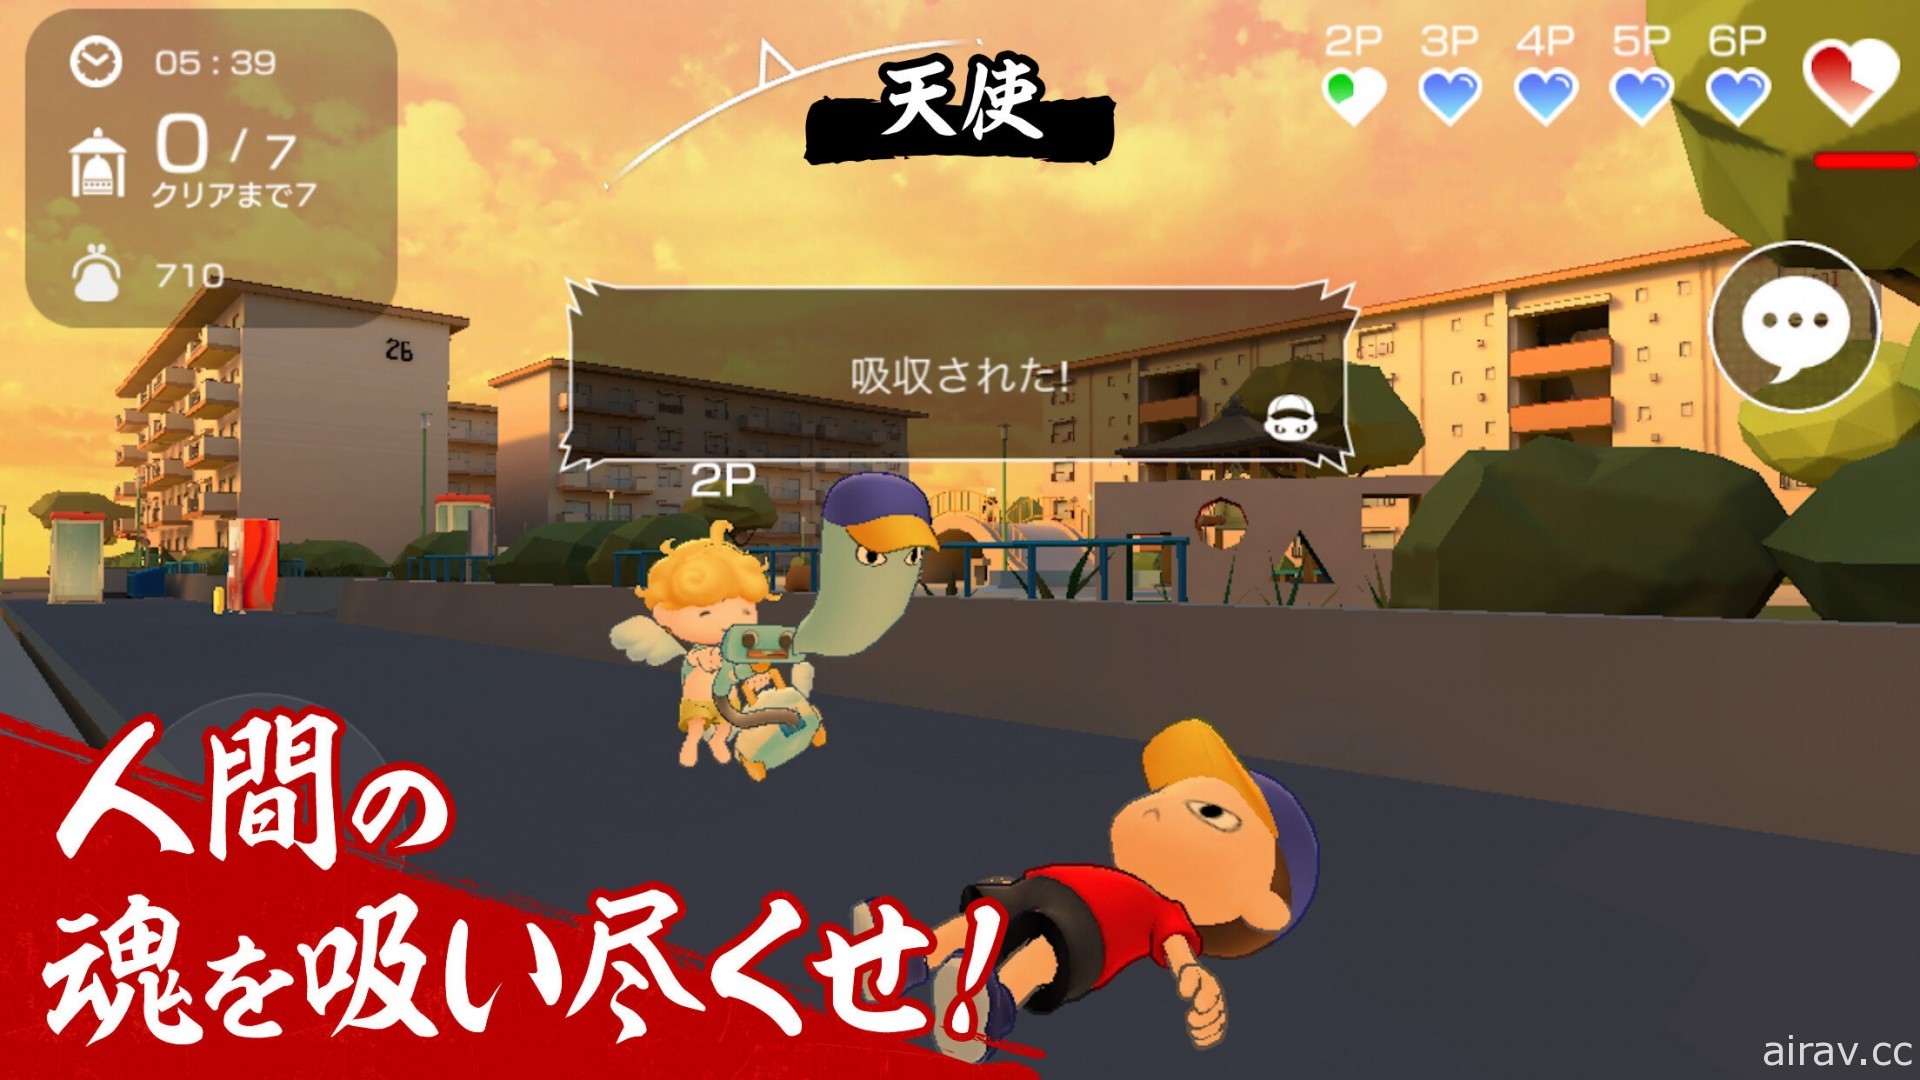 本田翼制作非对称对战游戏《Nyorokko》今夏于日本推出 仅提供 6 个月的限定服务